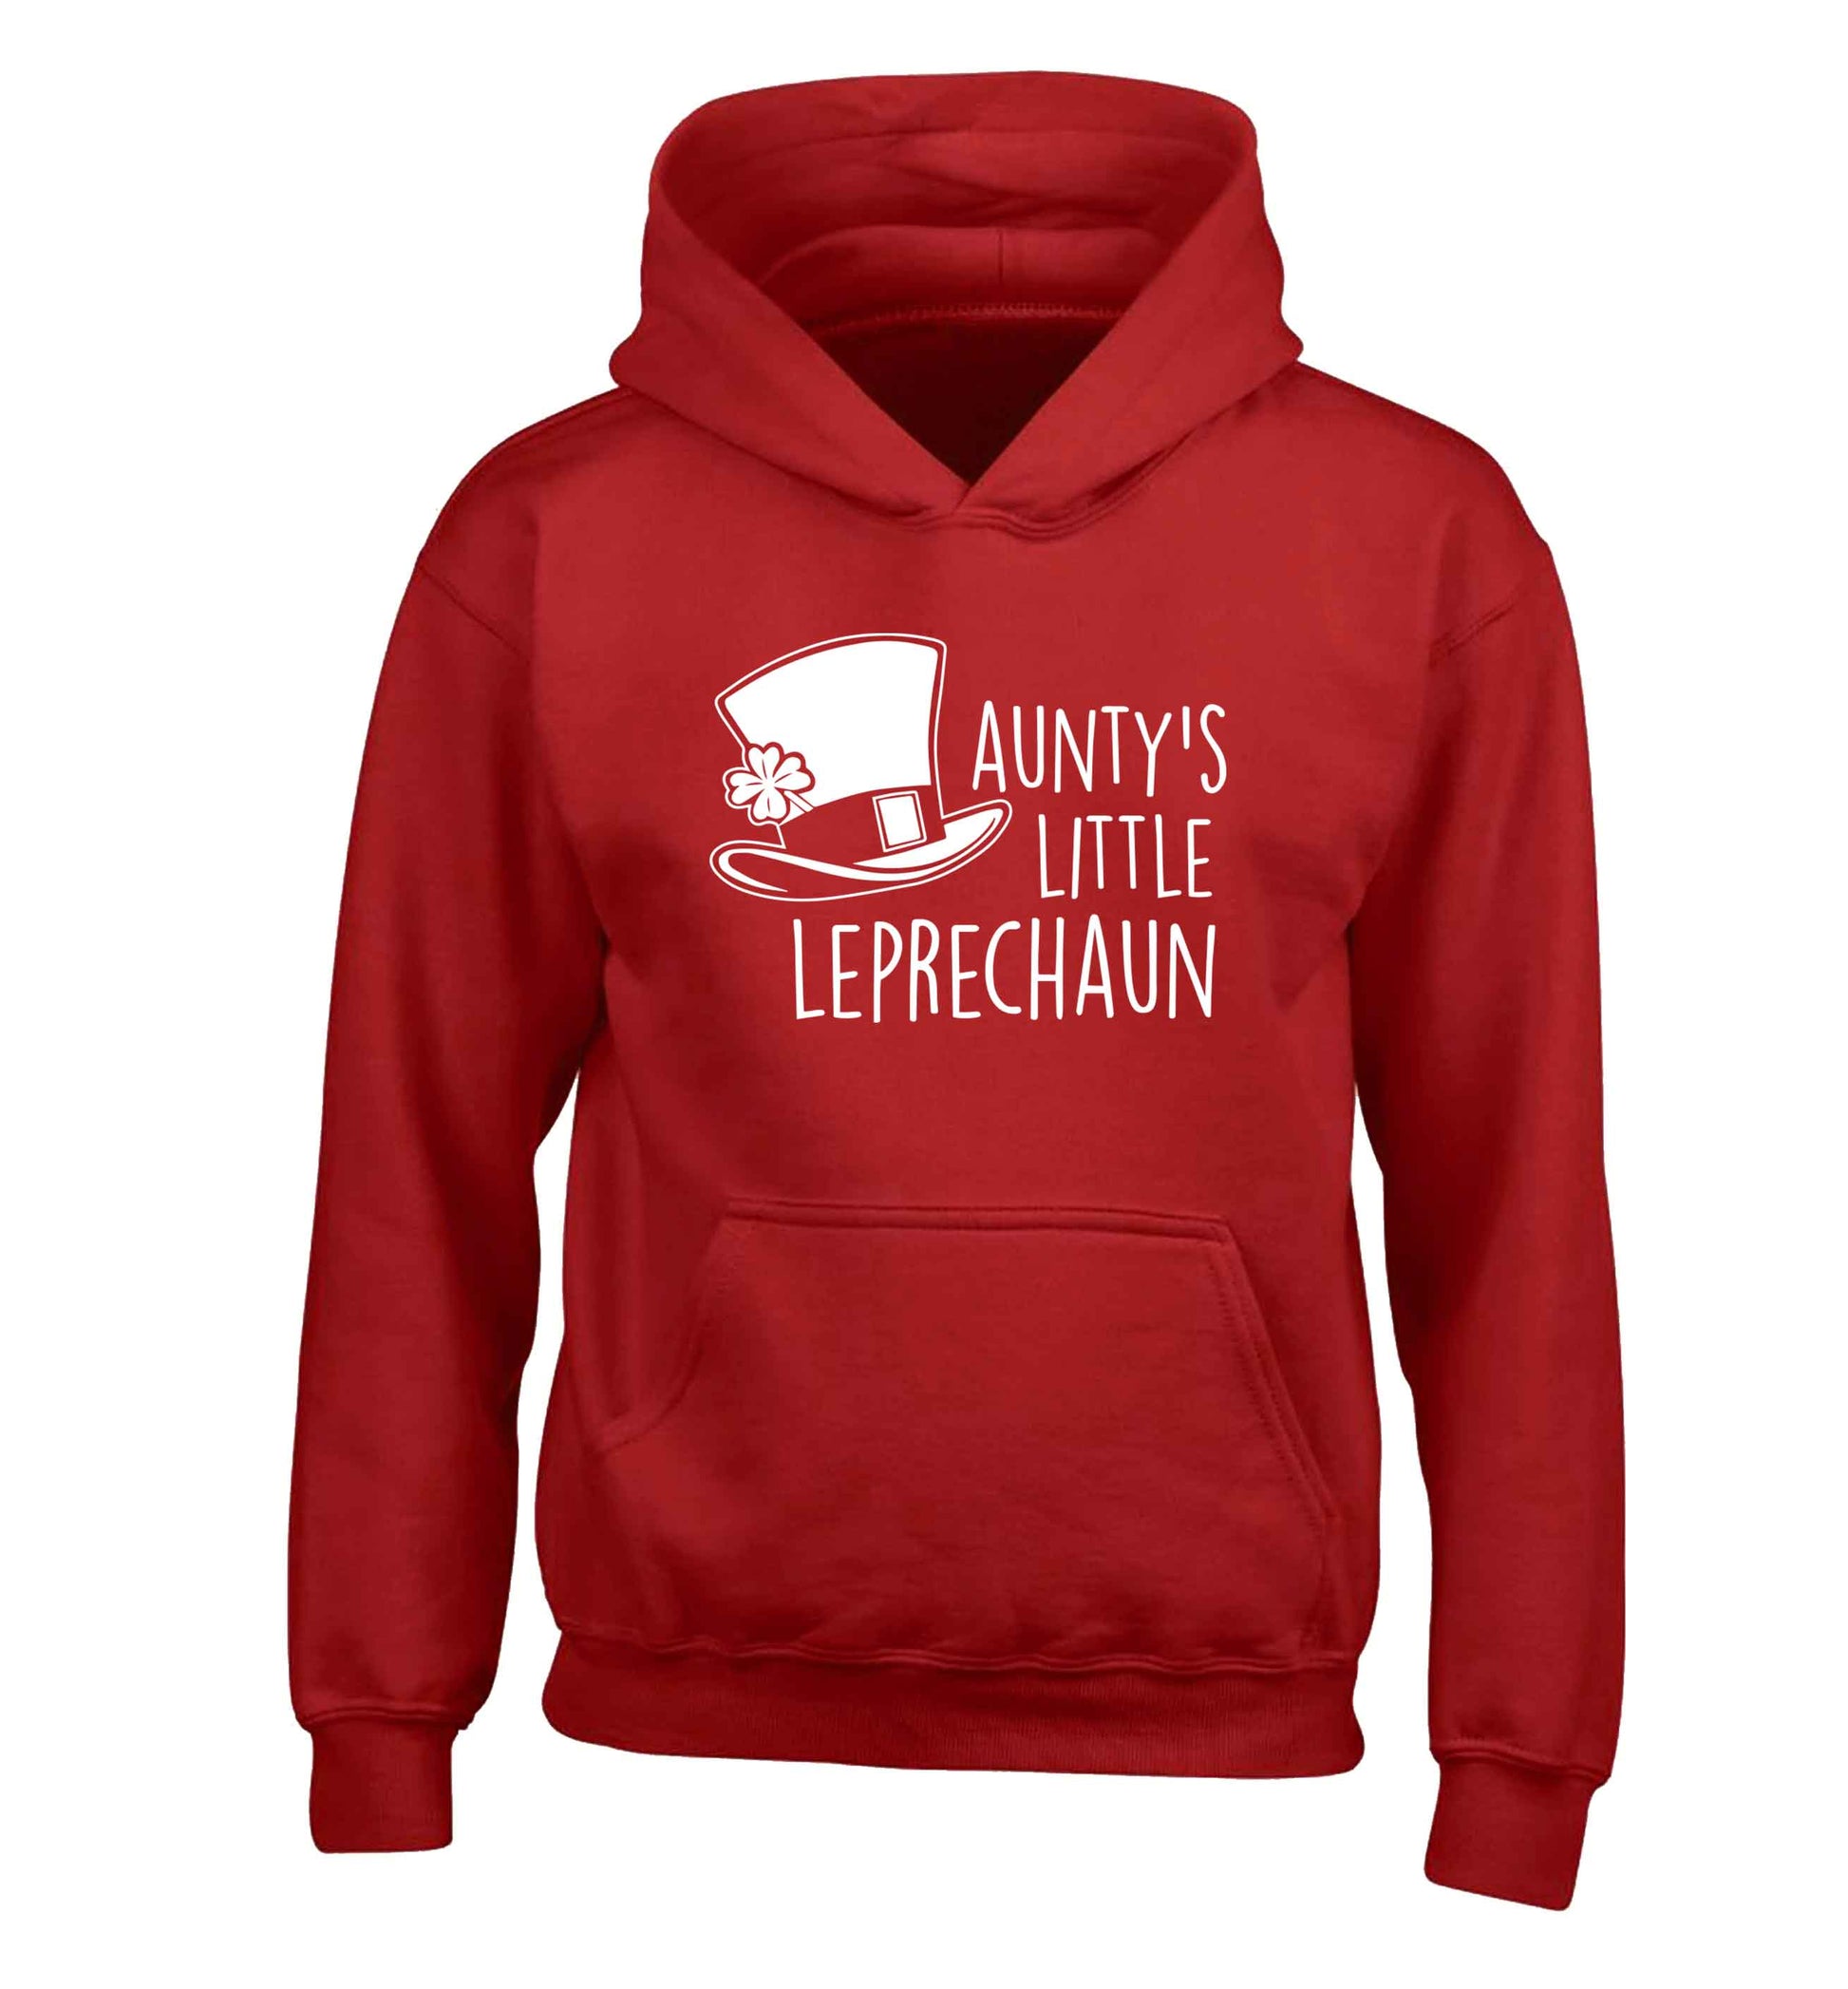 Aunty's little leprechaun children's red hoodie 12-13 Years